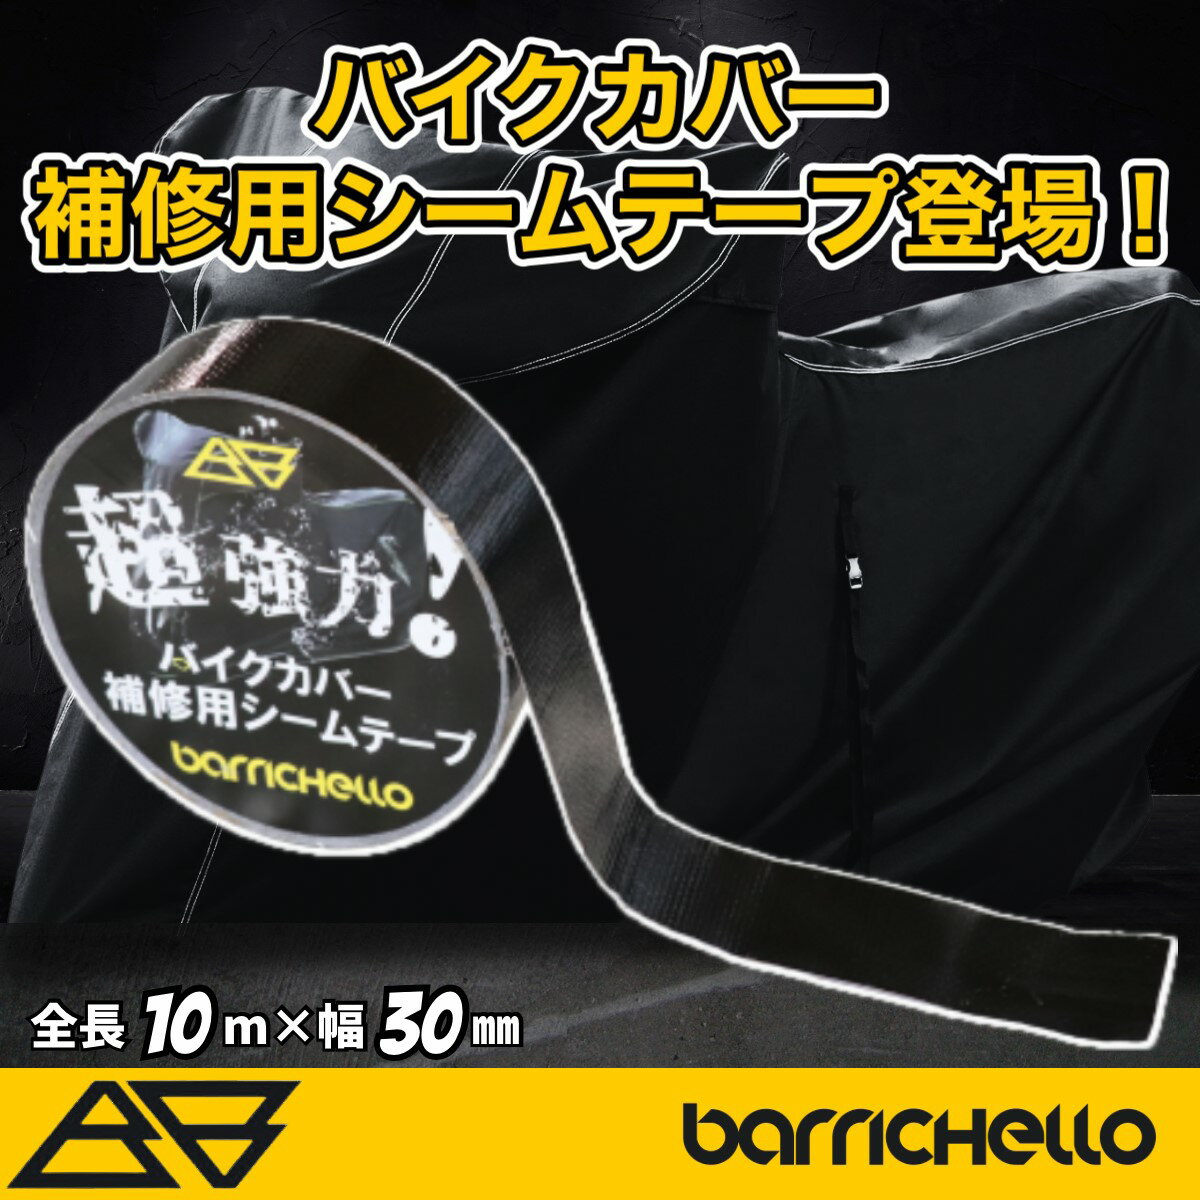 【送料無料】Barrichello(バリチェロ)バイクカバー 補修用シームテープ 防水 雨漏り対策 強力粘着 2